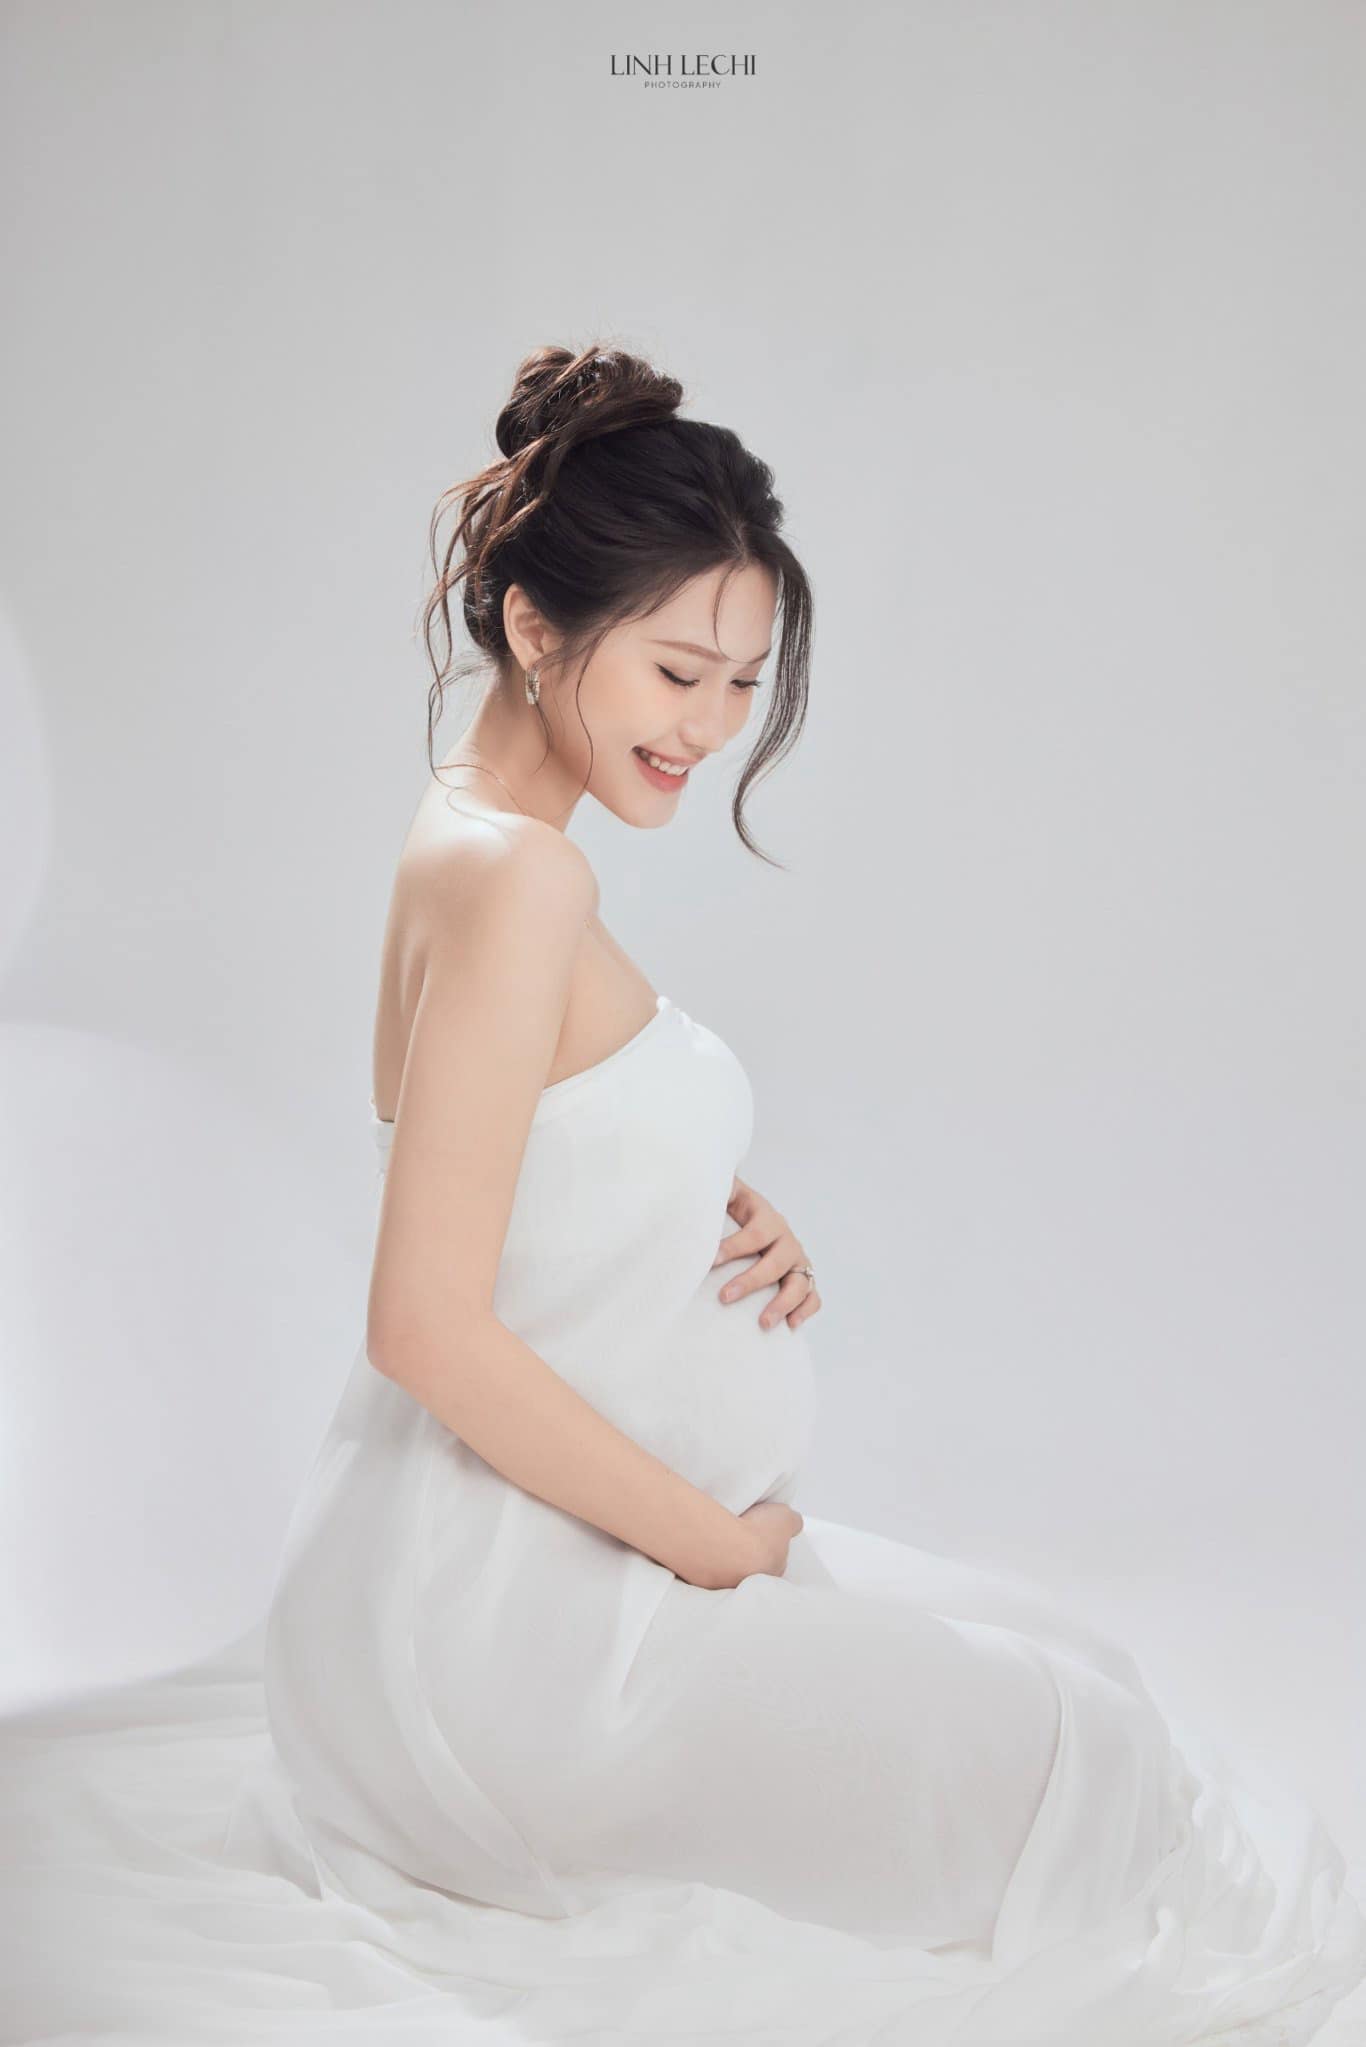 Hoà Minzy chúc mừng vợ Đoàn Văn Hậu mang thai, em bé 'cực phẩm' sắp chào đời - ảnh 6